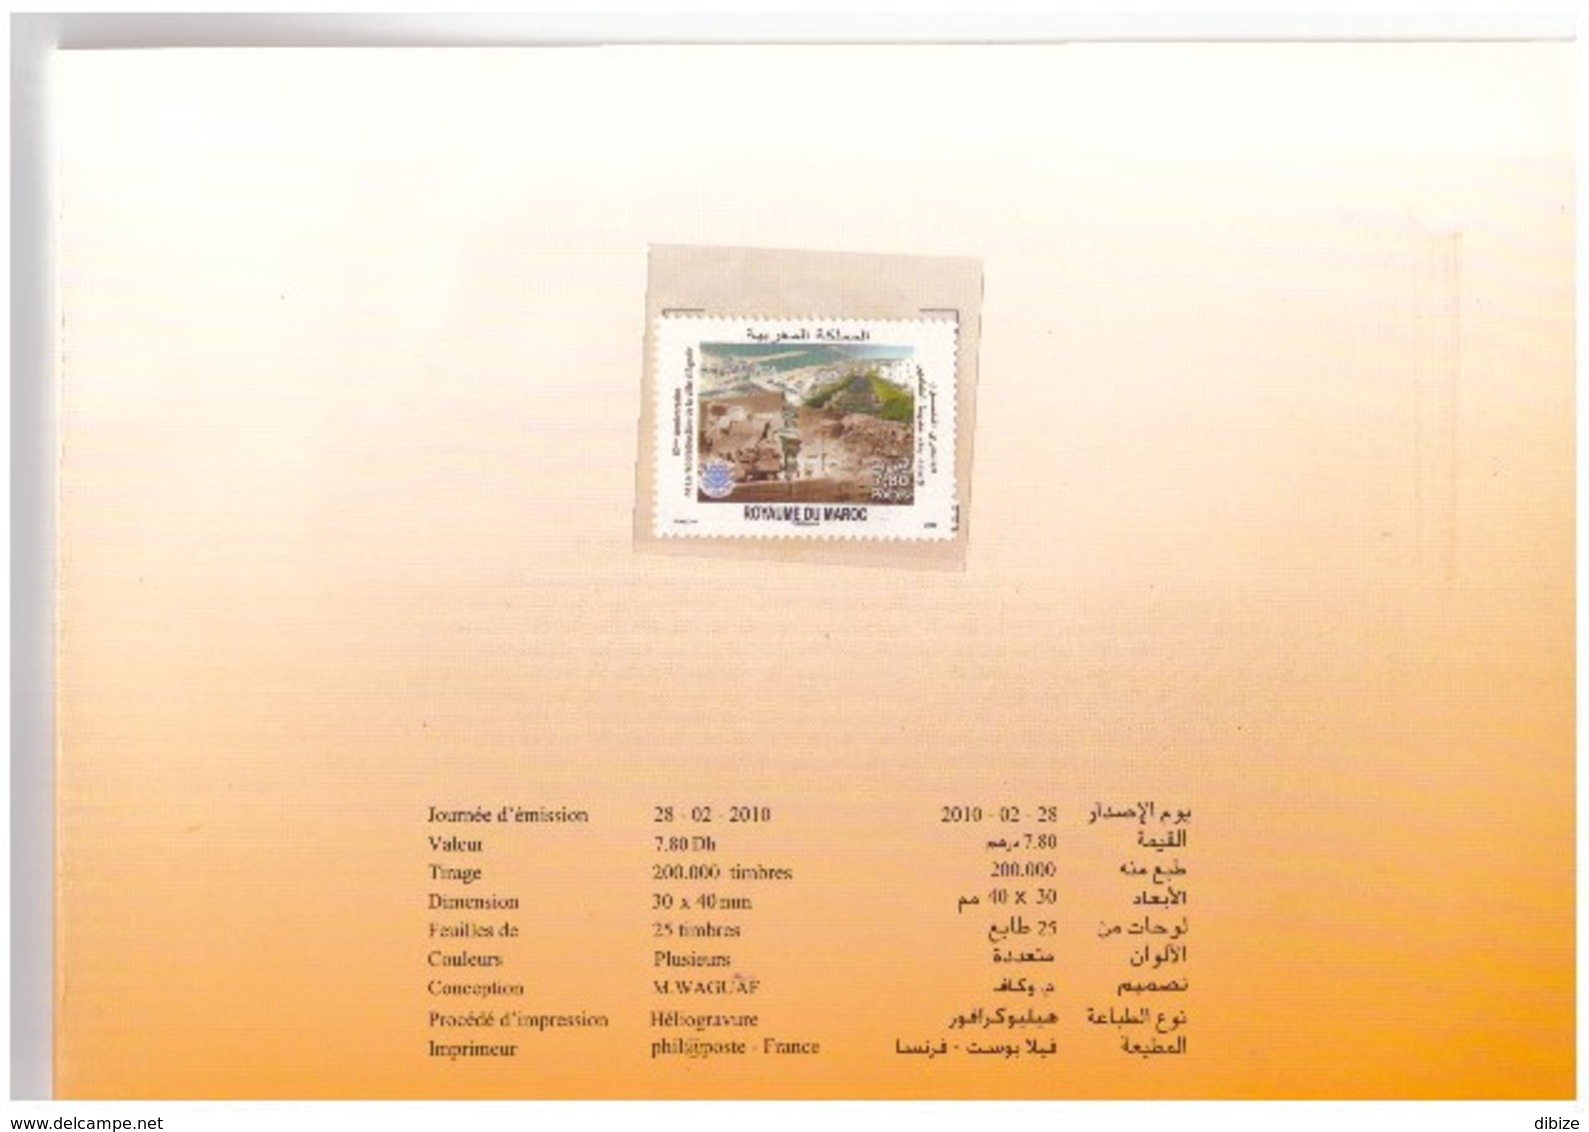 Maroc  Album N° 1544 De 2010 Timbre + FDC Cinquantenaire Agadir - Marruecos (1956-...)